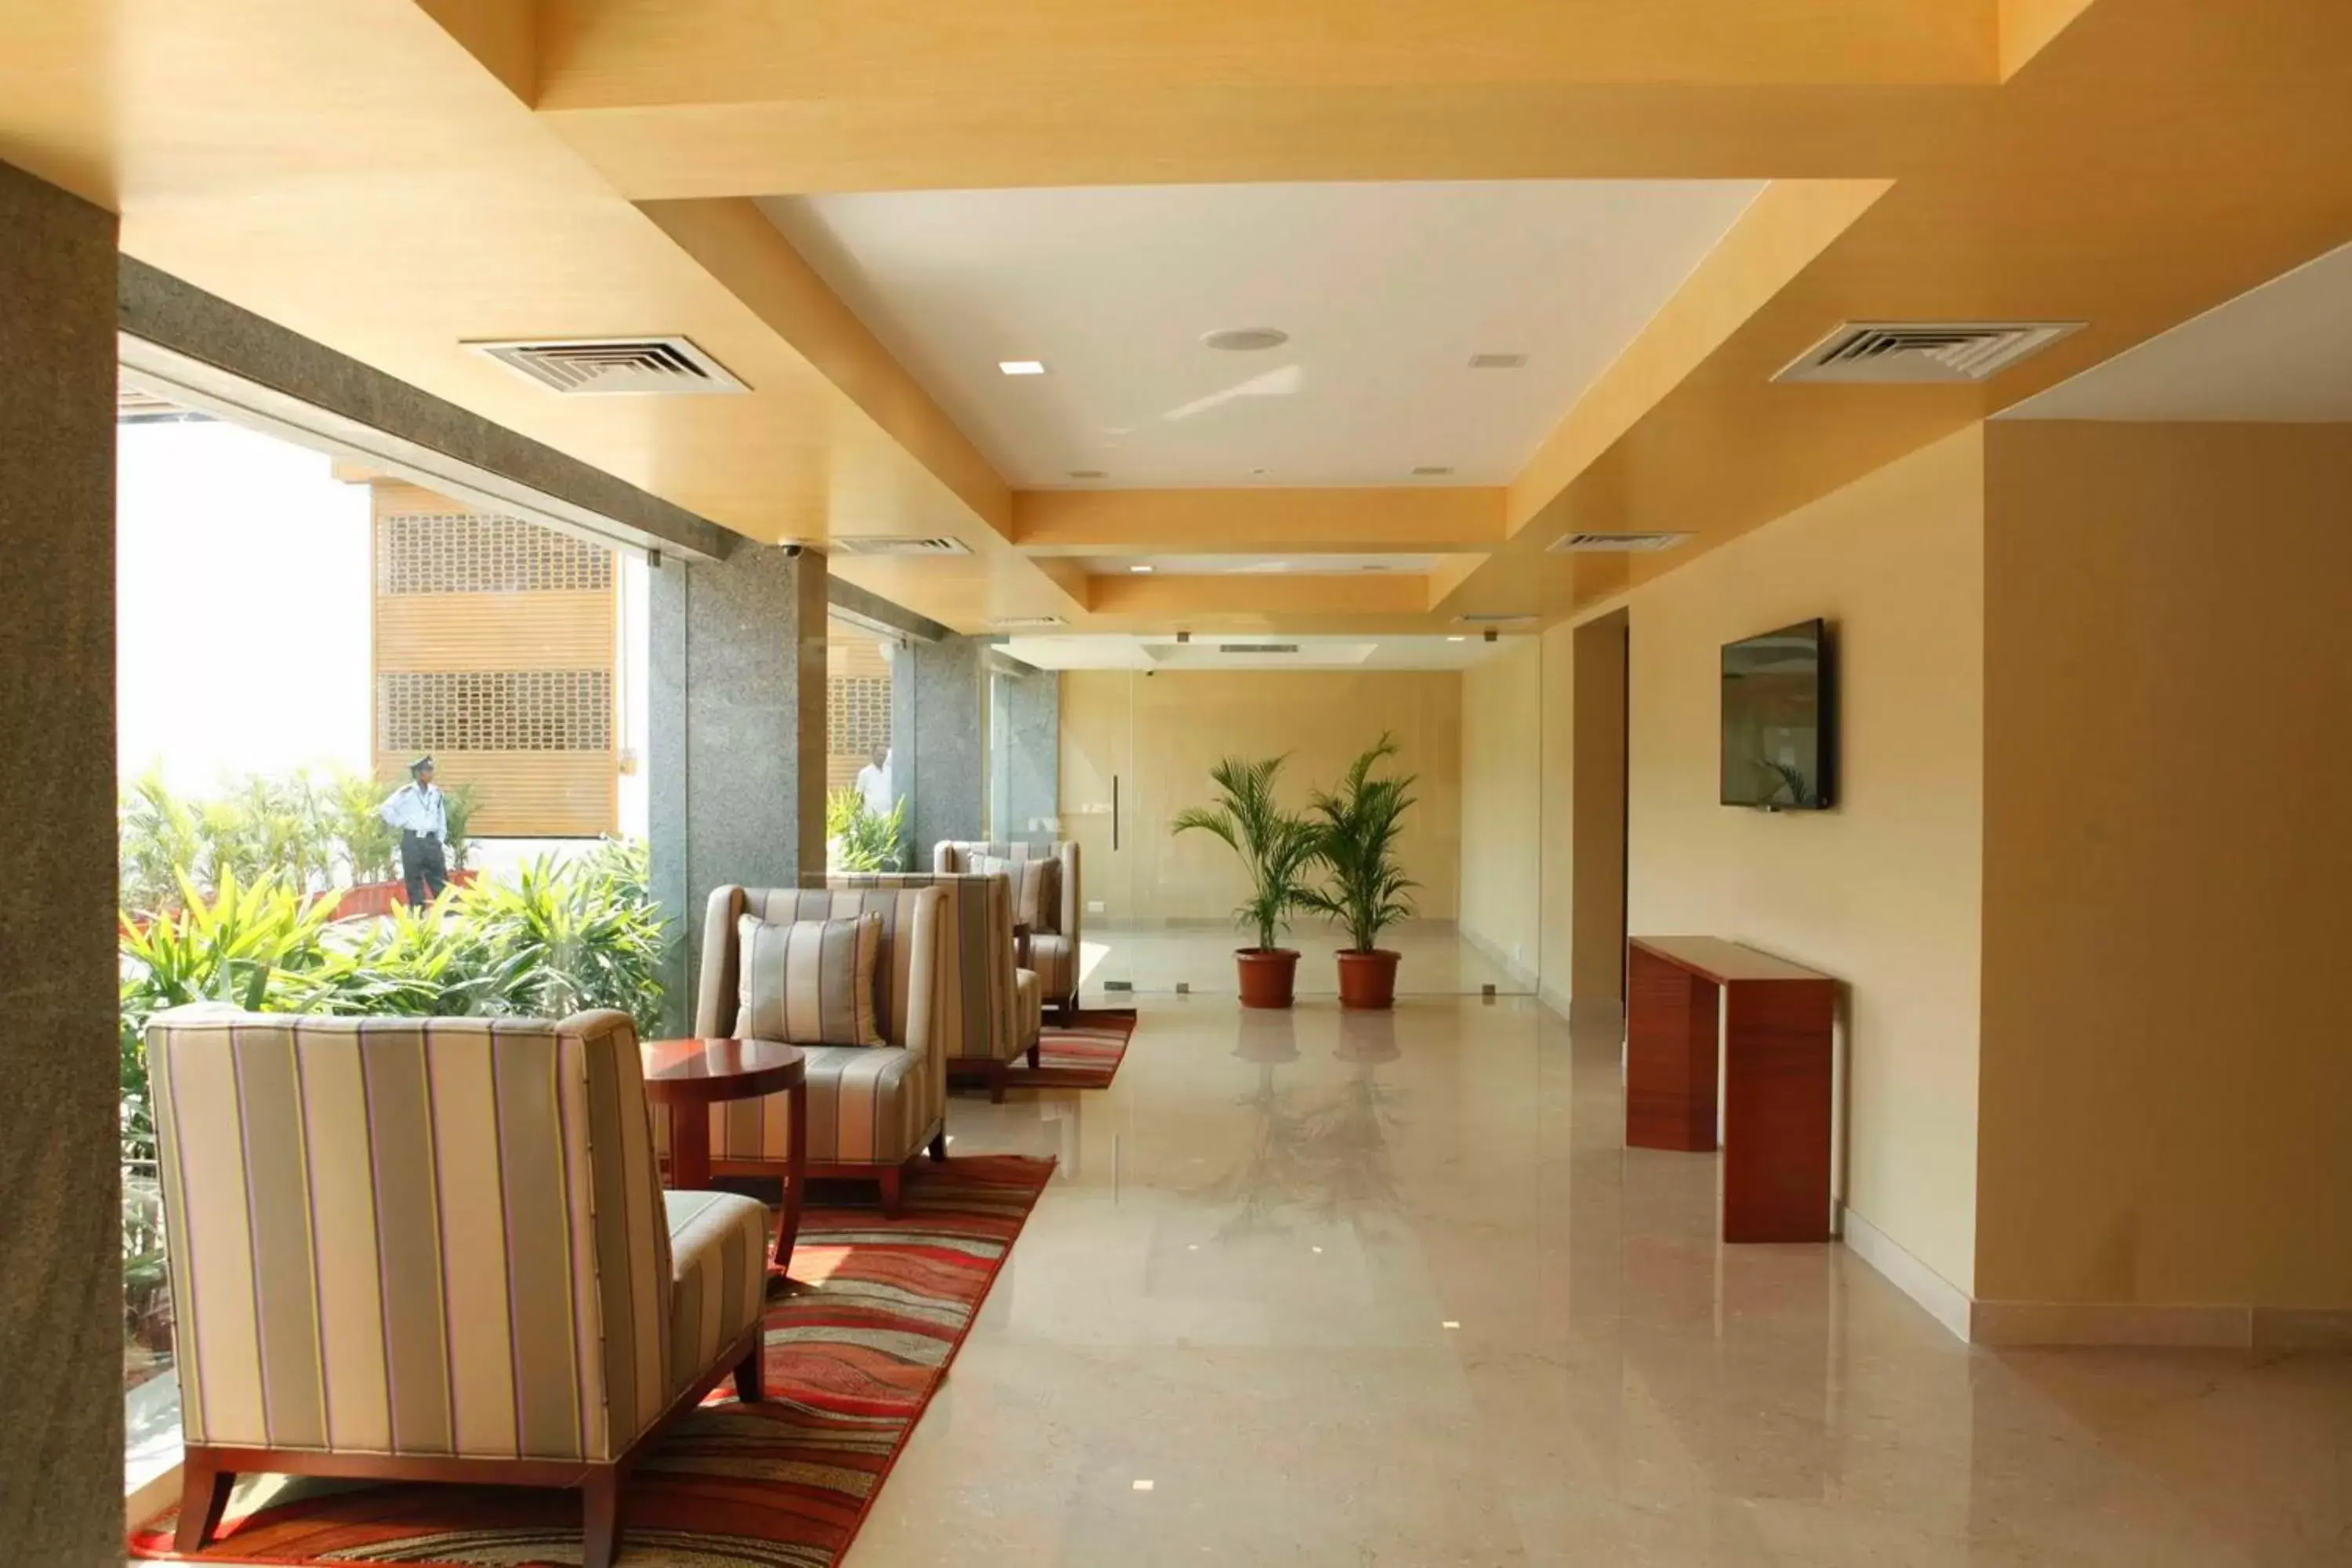 Lobby or reception in Lemon Tree Hotel Shimona Chennai